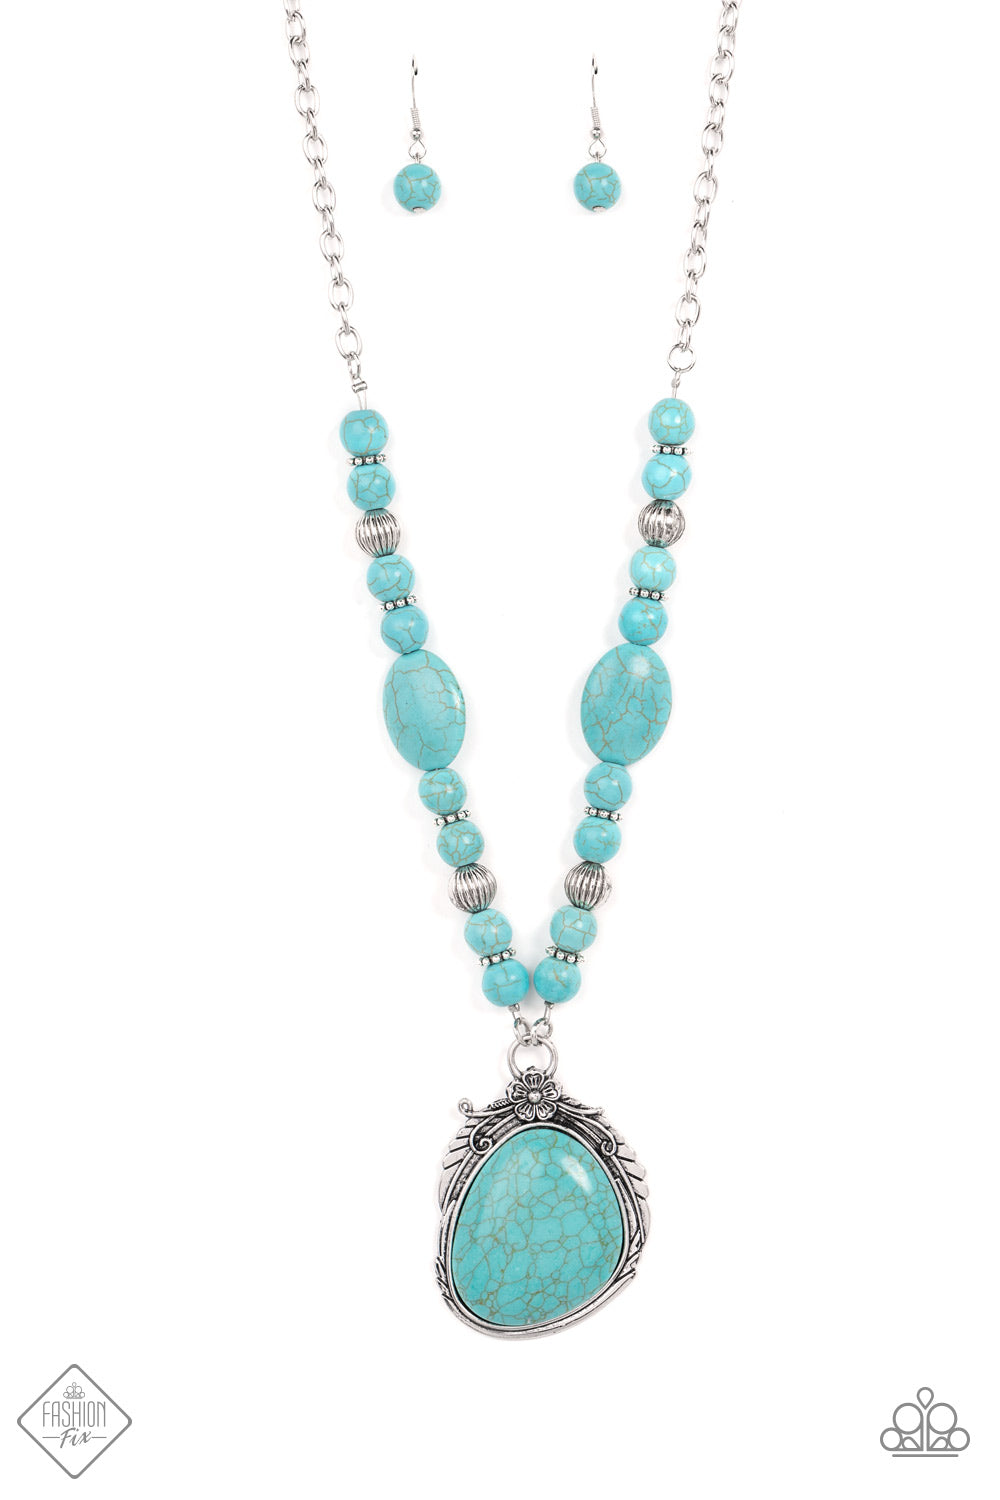 Southwest Paradise - Blue (Turquoise) Necklace (SSF-0122) freeshipping - JewLz4u Gemstone Gallery